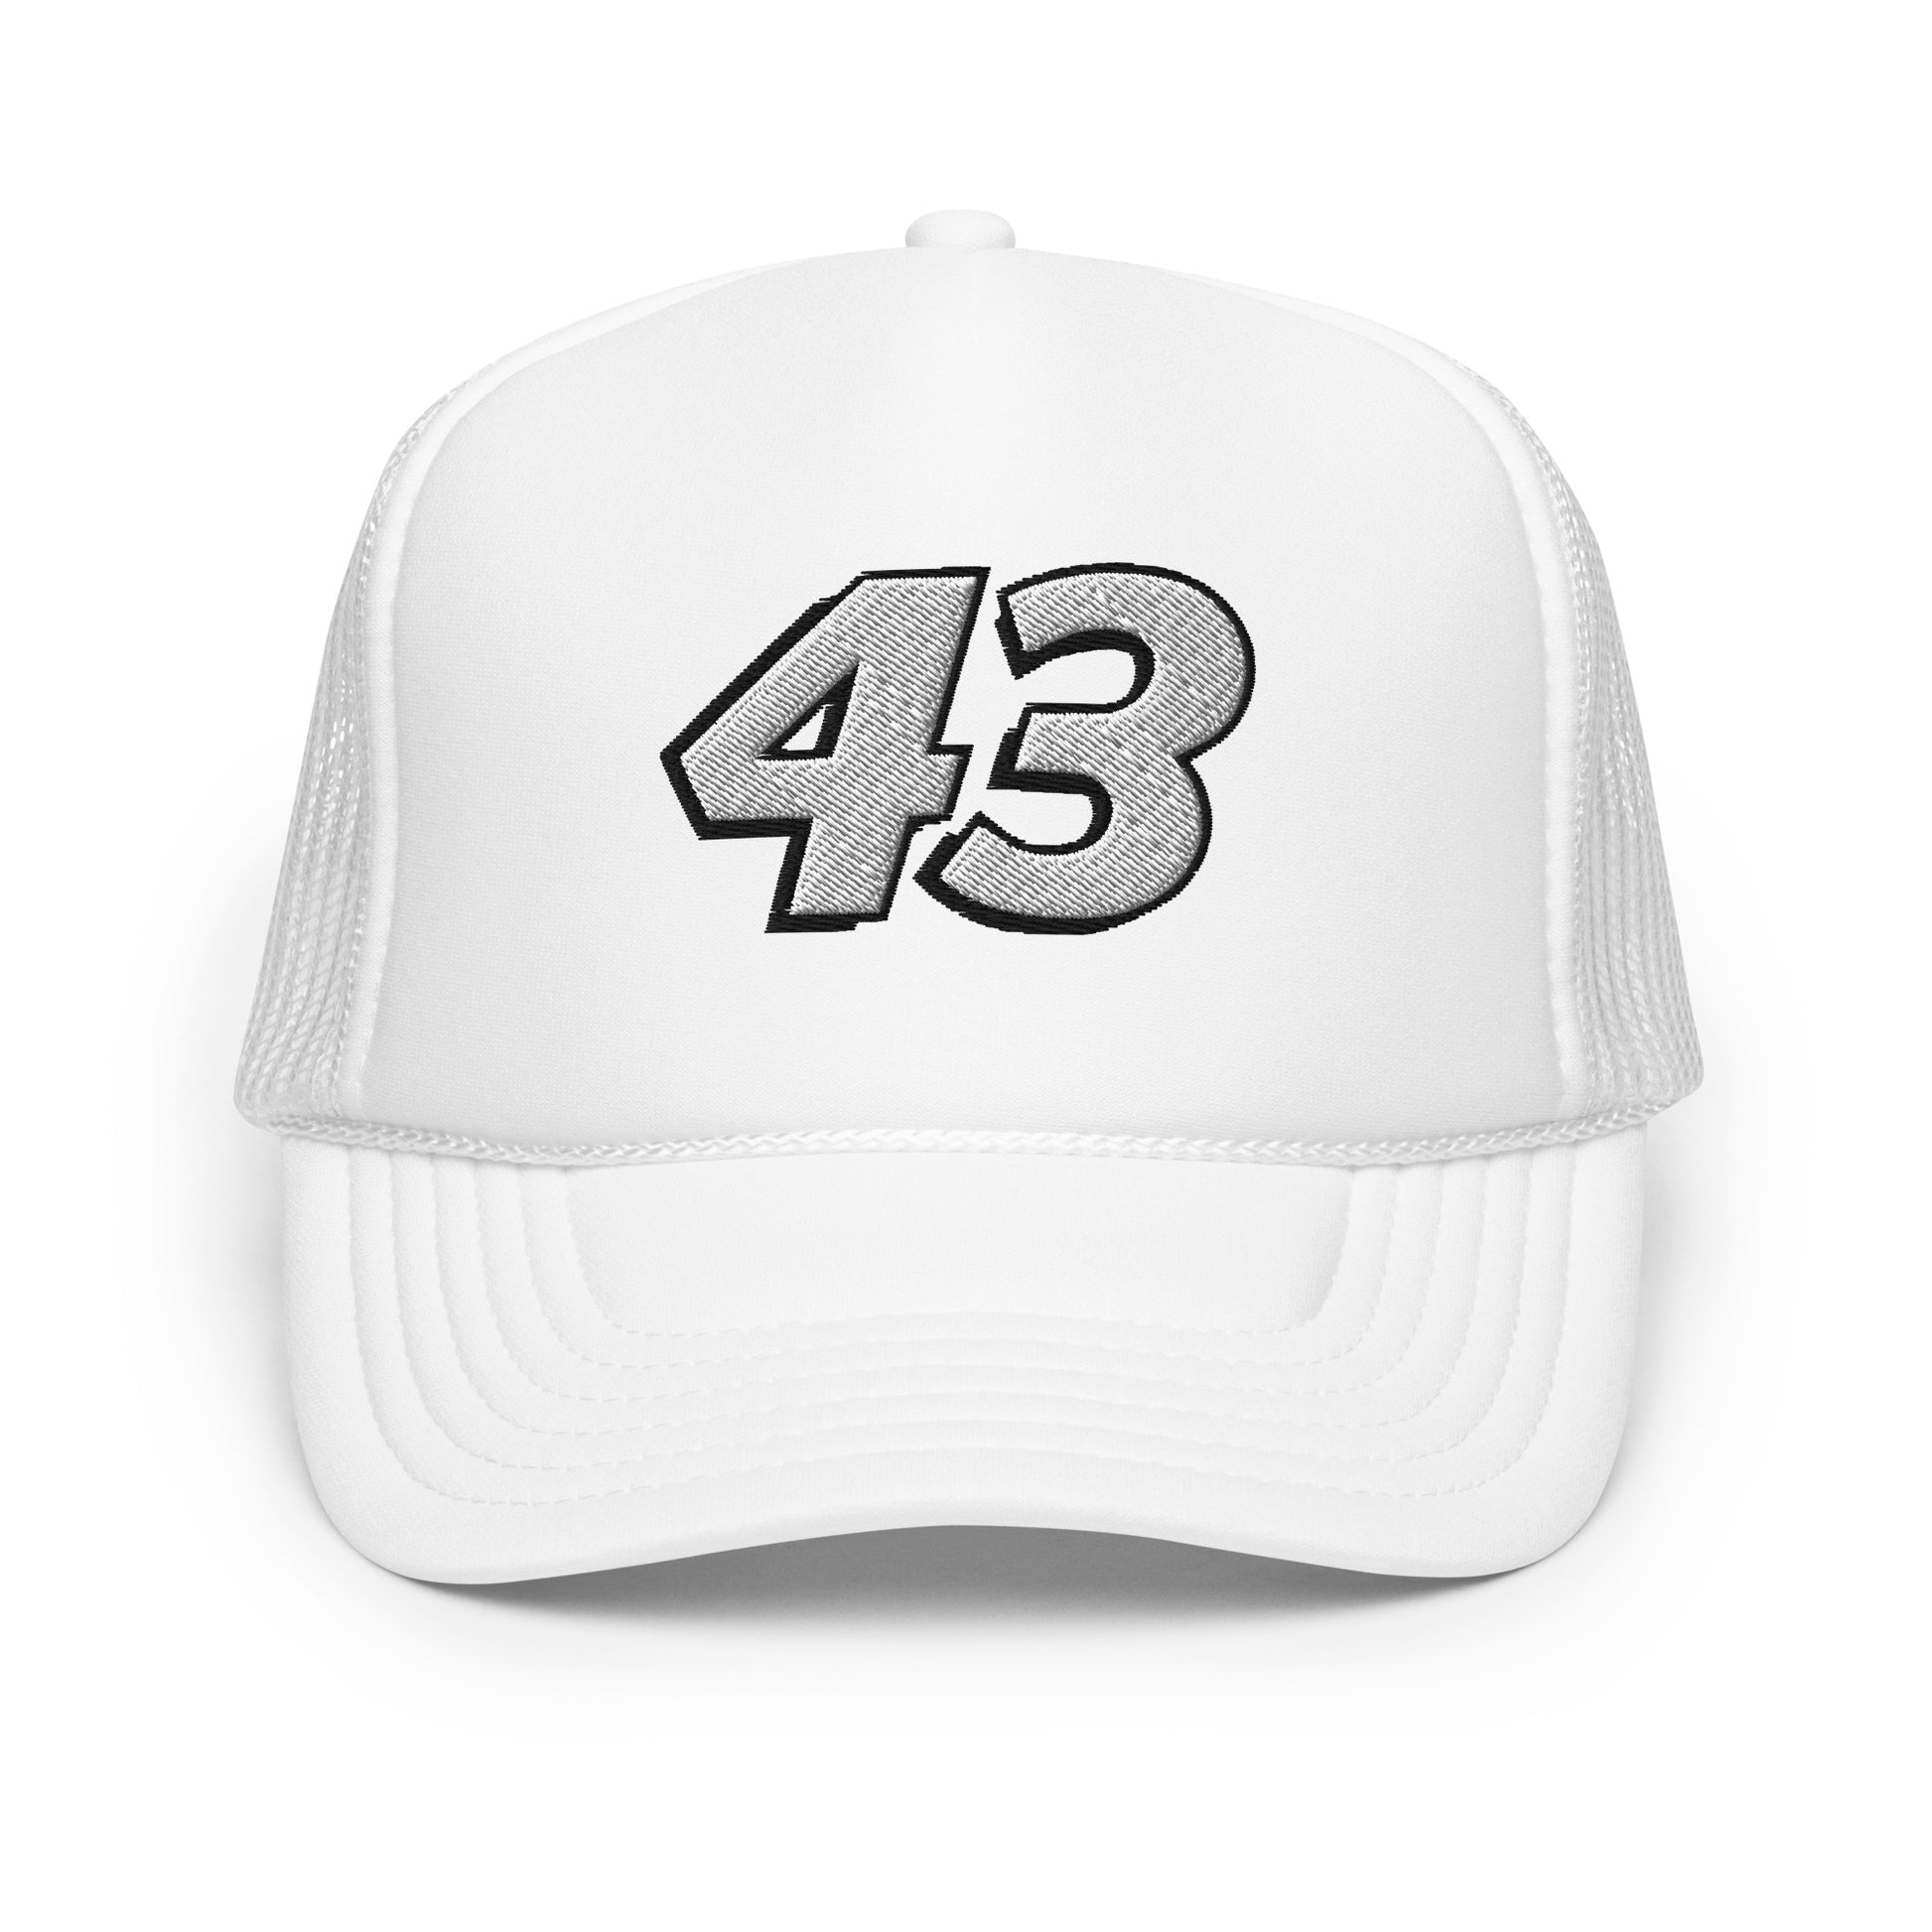 Foam trucker hat - 43 - [Daniel Dye Racing Shop]